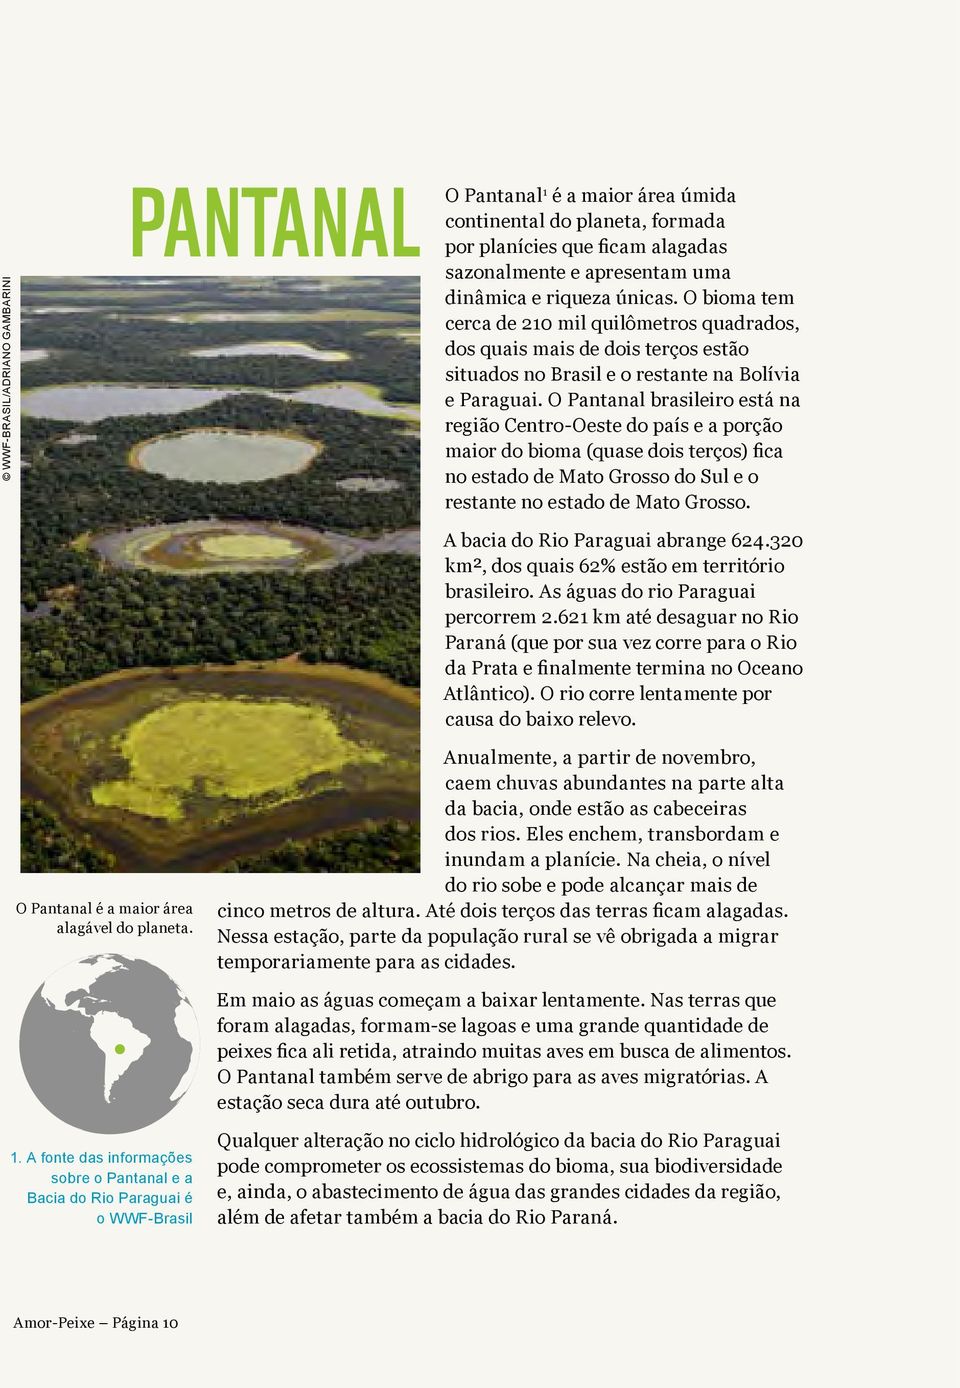 O Pantanal brasileiro está na região Centro-Oeste do país e a porção maior do bioma (quase dois terços) fica no estado de Mato Grosso do Sul e o restante no estado de Mato Grosso.